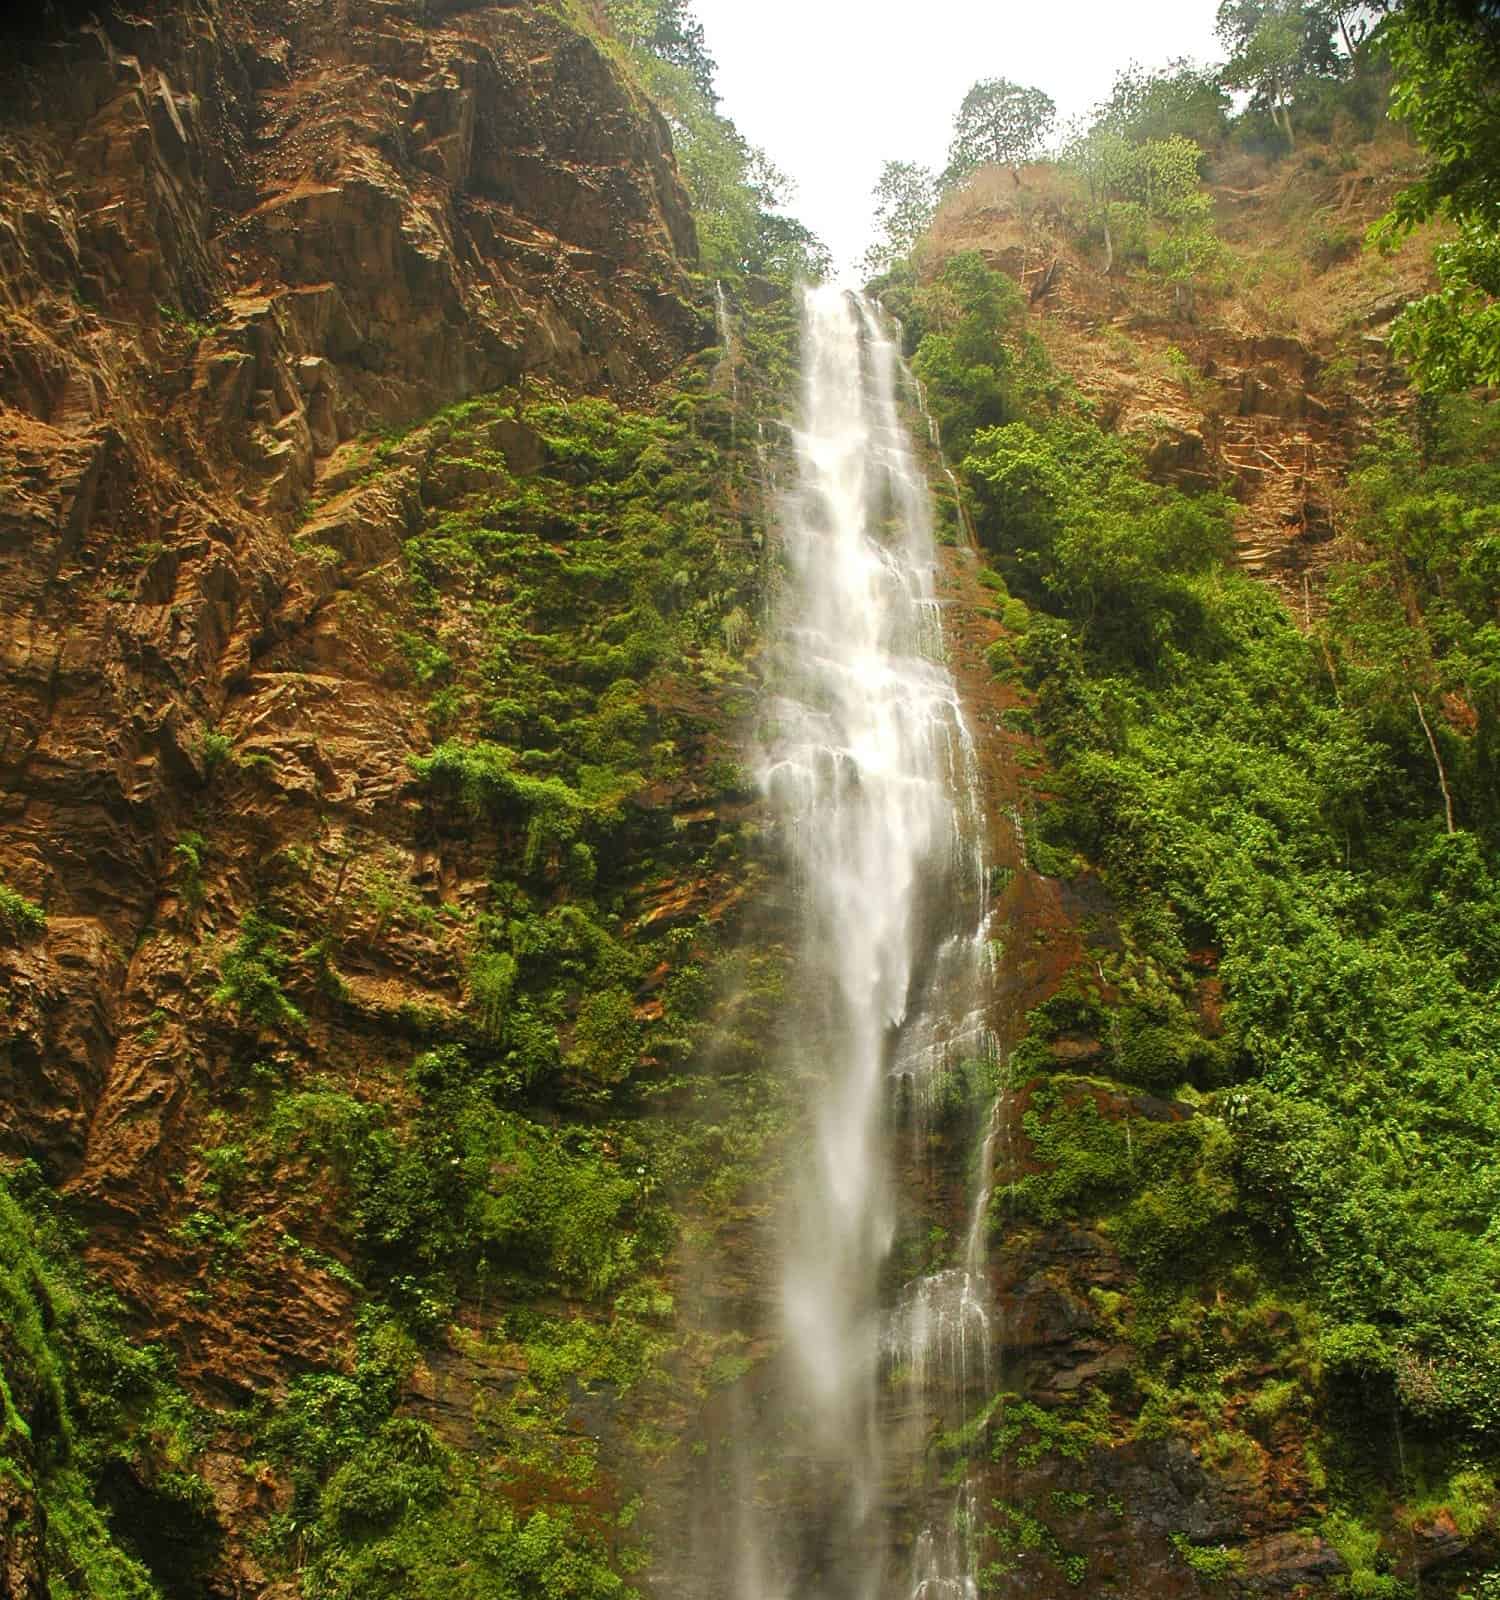 Wli Falls in eastern Ghana